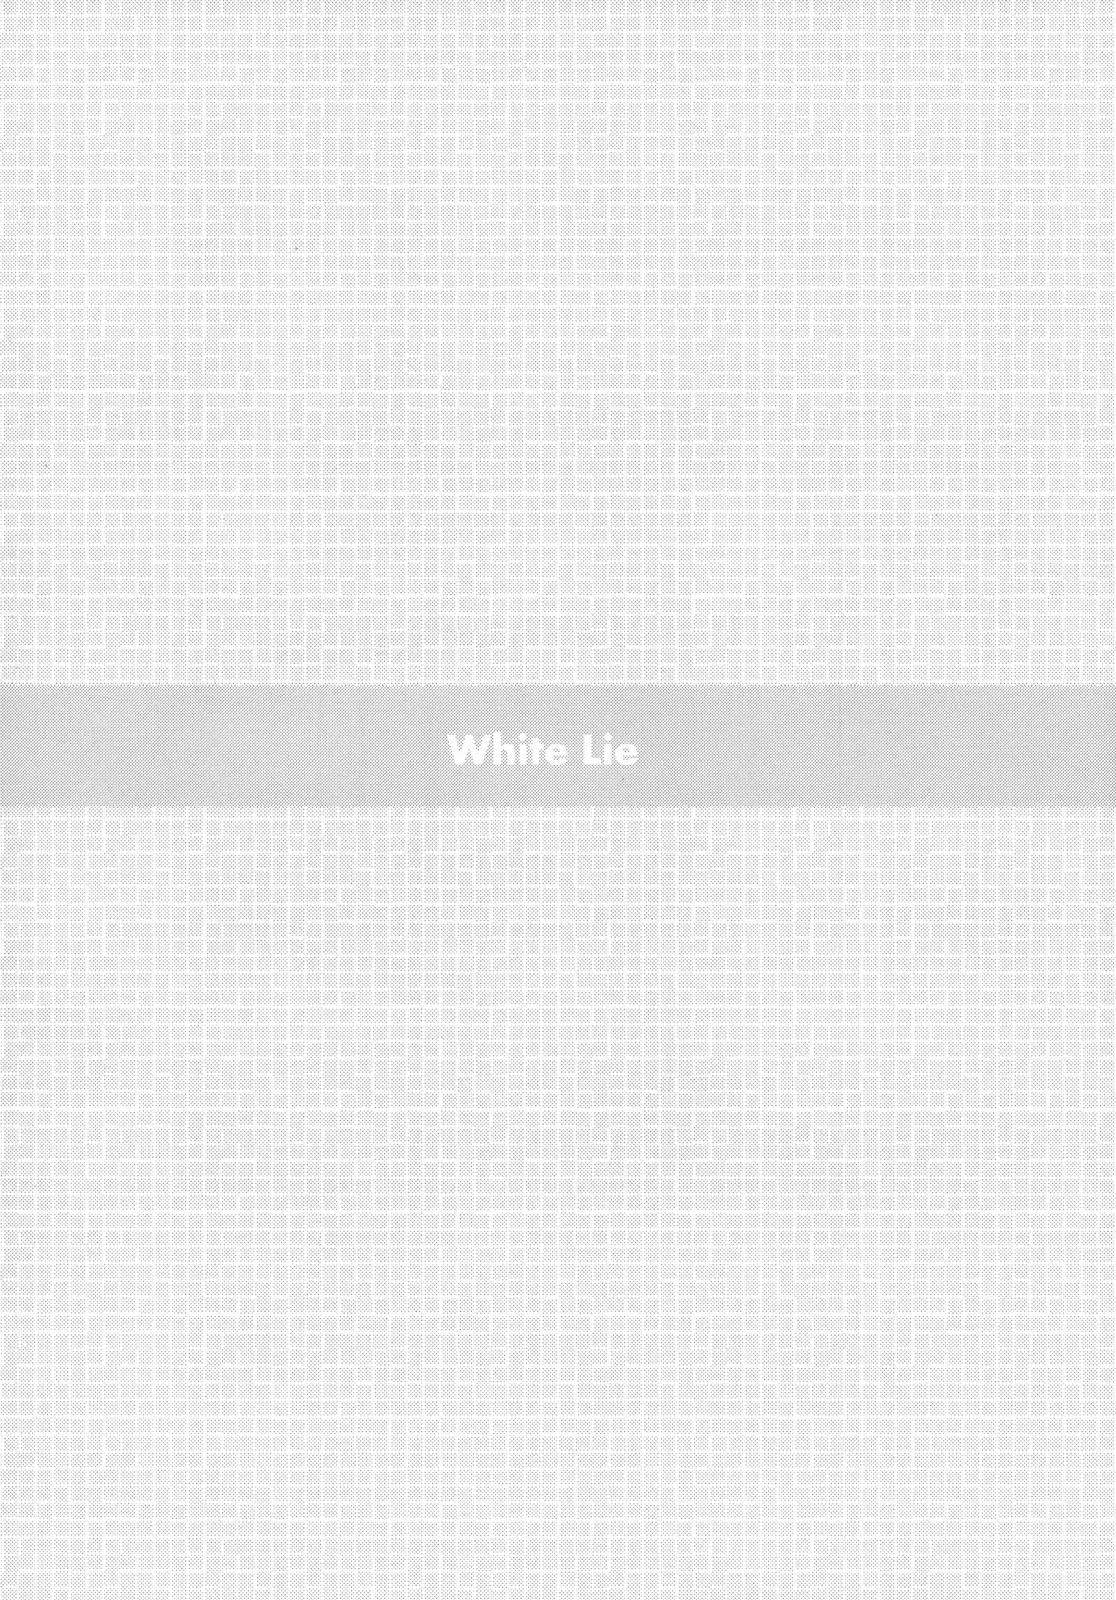 Trimmed White Lie - Neon genesis evangelion Mulata - Page 4